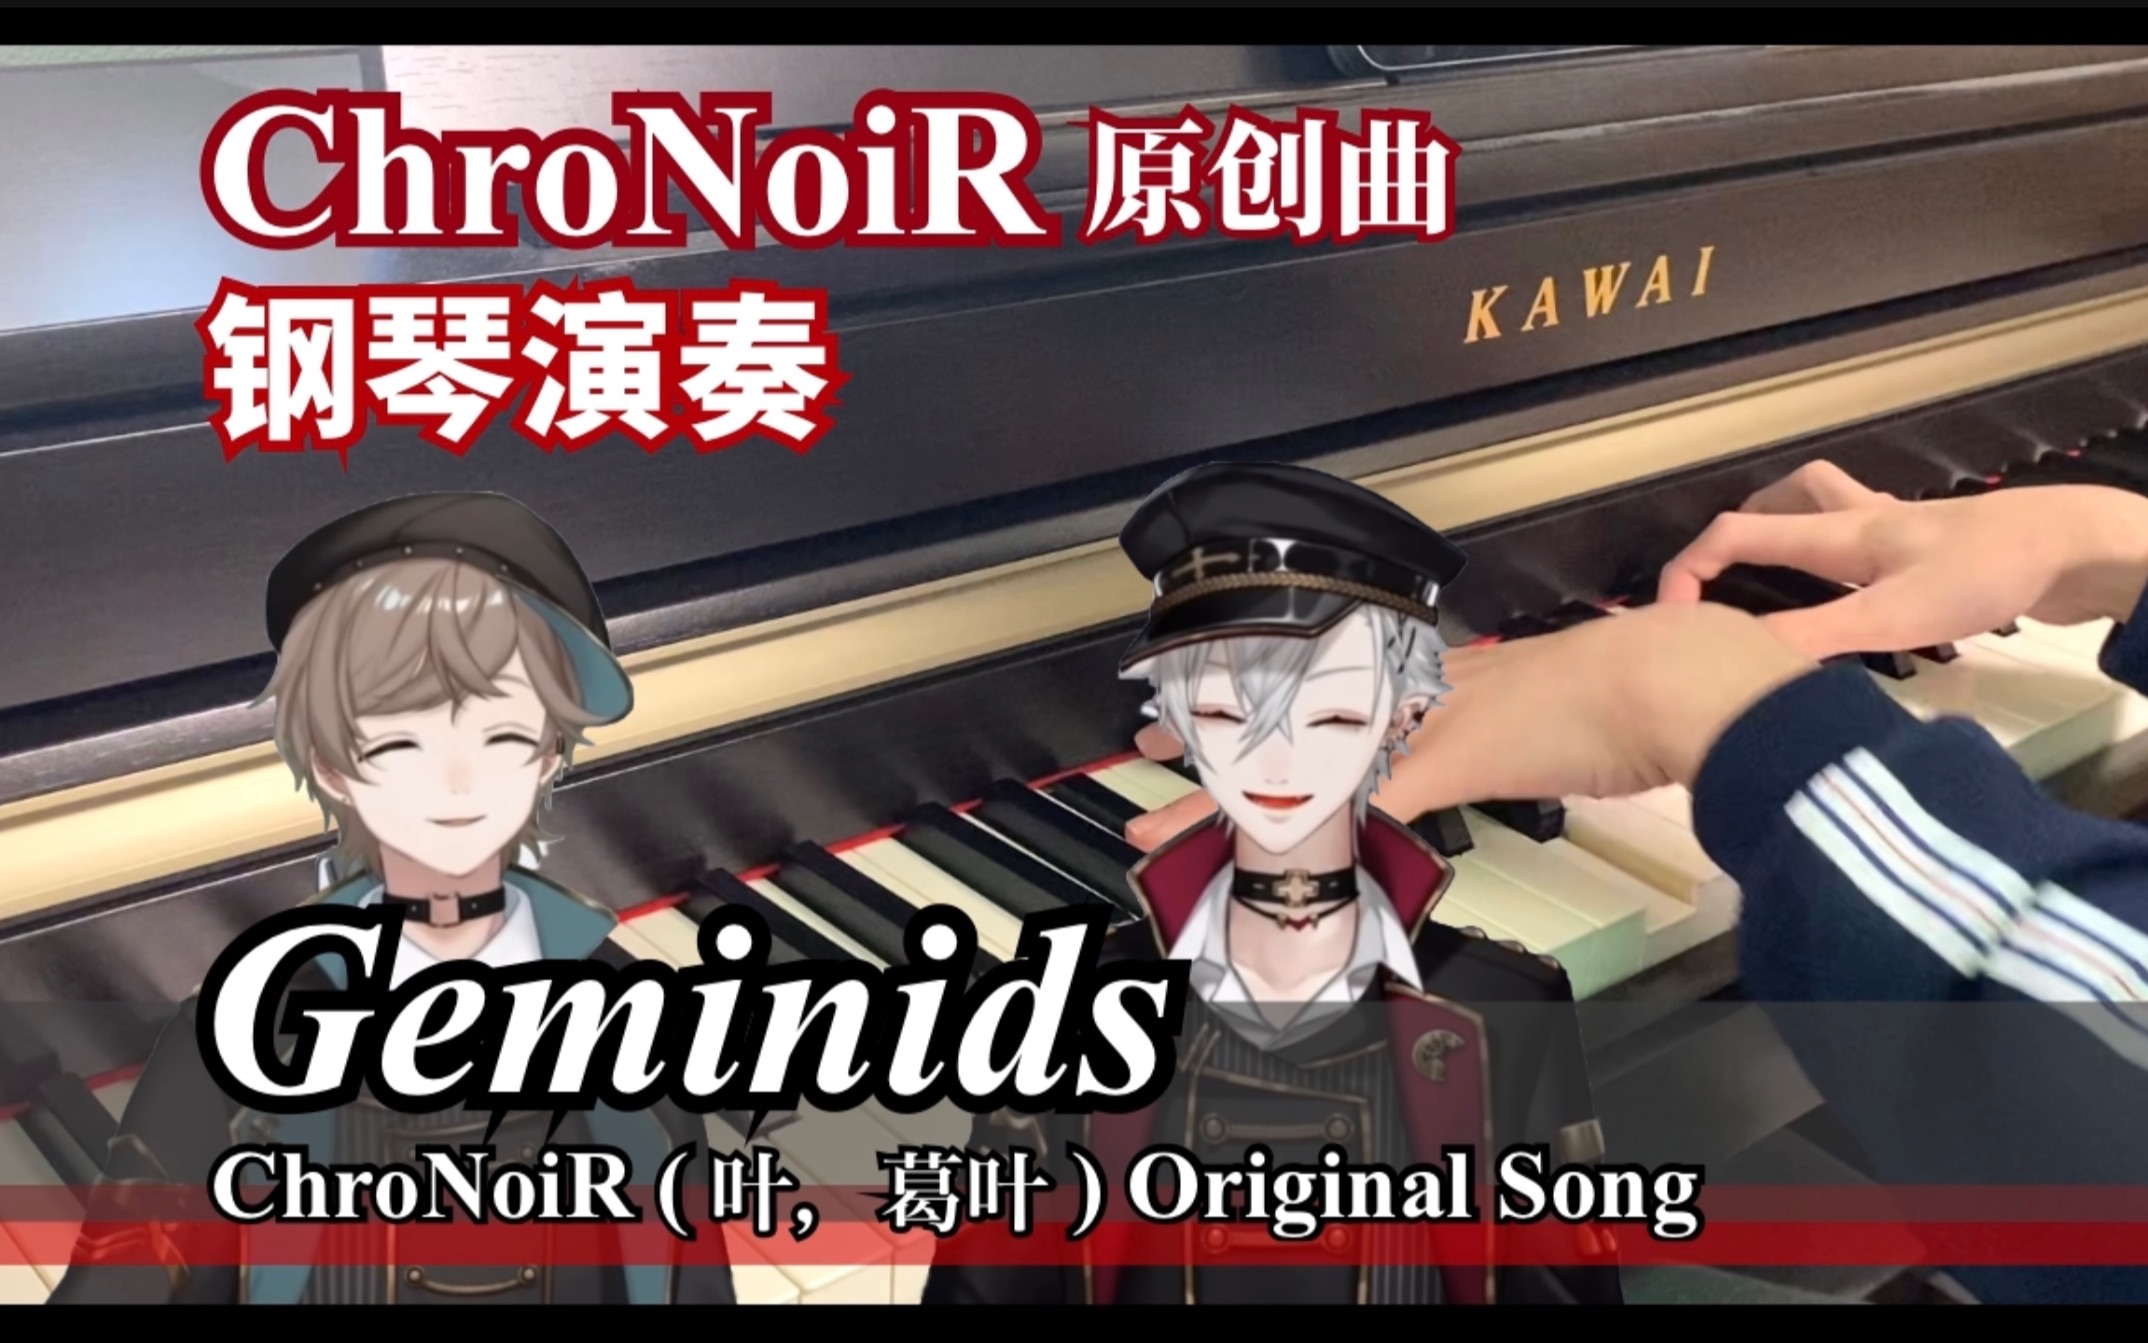 【钢琴】Geminids / ChroNoiR（叶＆葛叶）原创曲 (Piano Cover)【彩虹社】【黑黑】